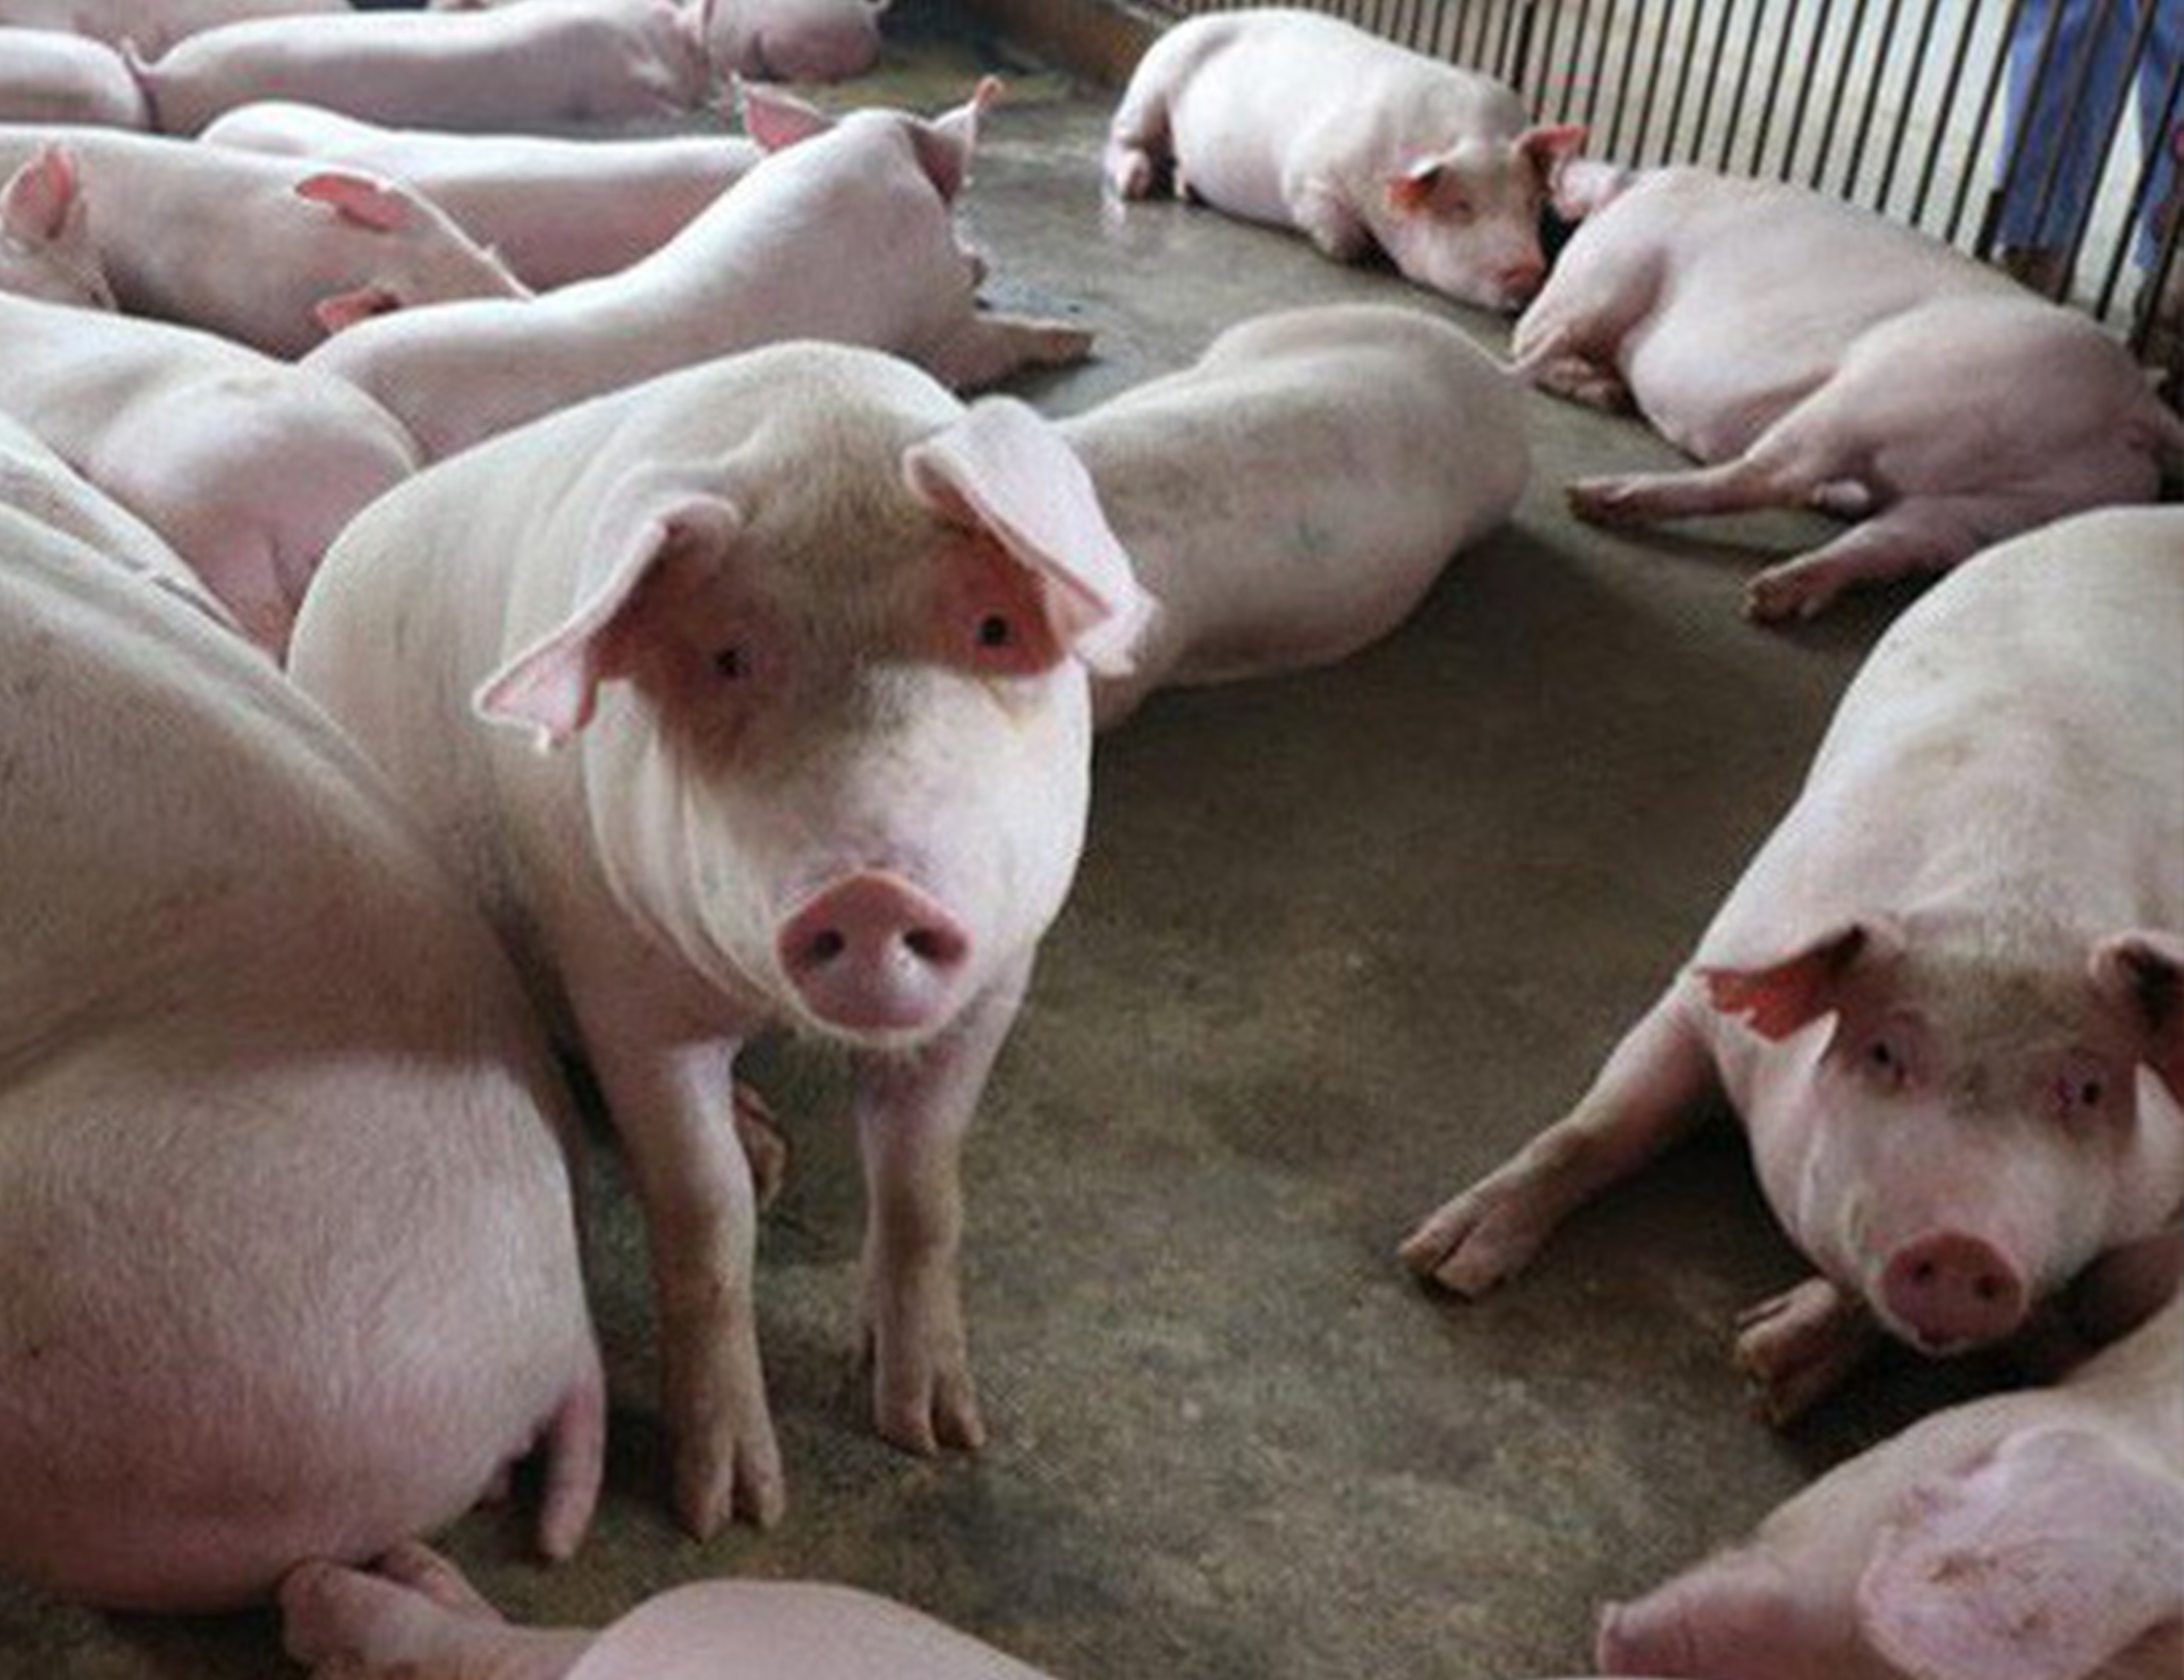 Chẩn đoán xét nghiệm bệnh Dịch tả lợn trong phòng chống dịch bệnh động vật trên cạn như thế nào?